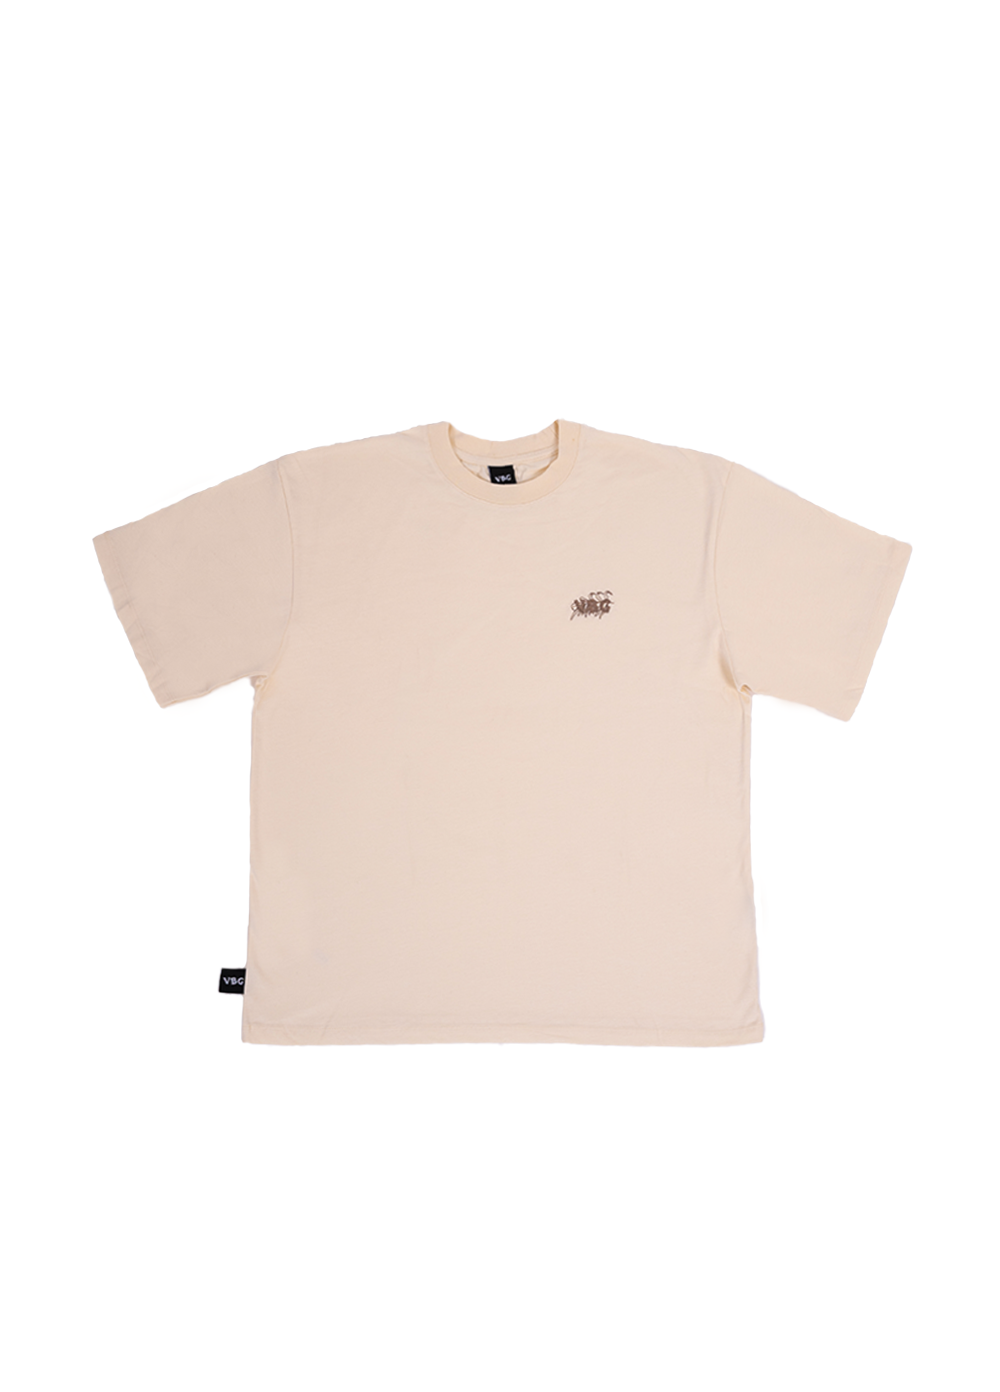 "Leaf Stitch" T-Shirt - Cream - VBG